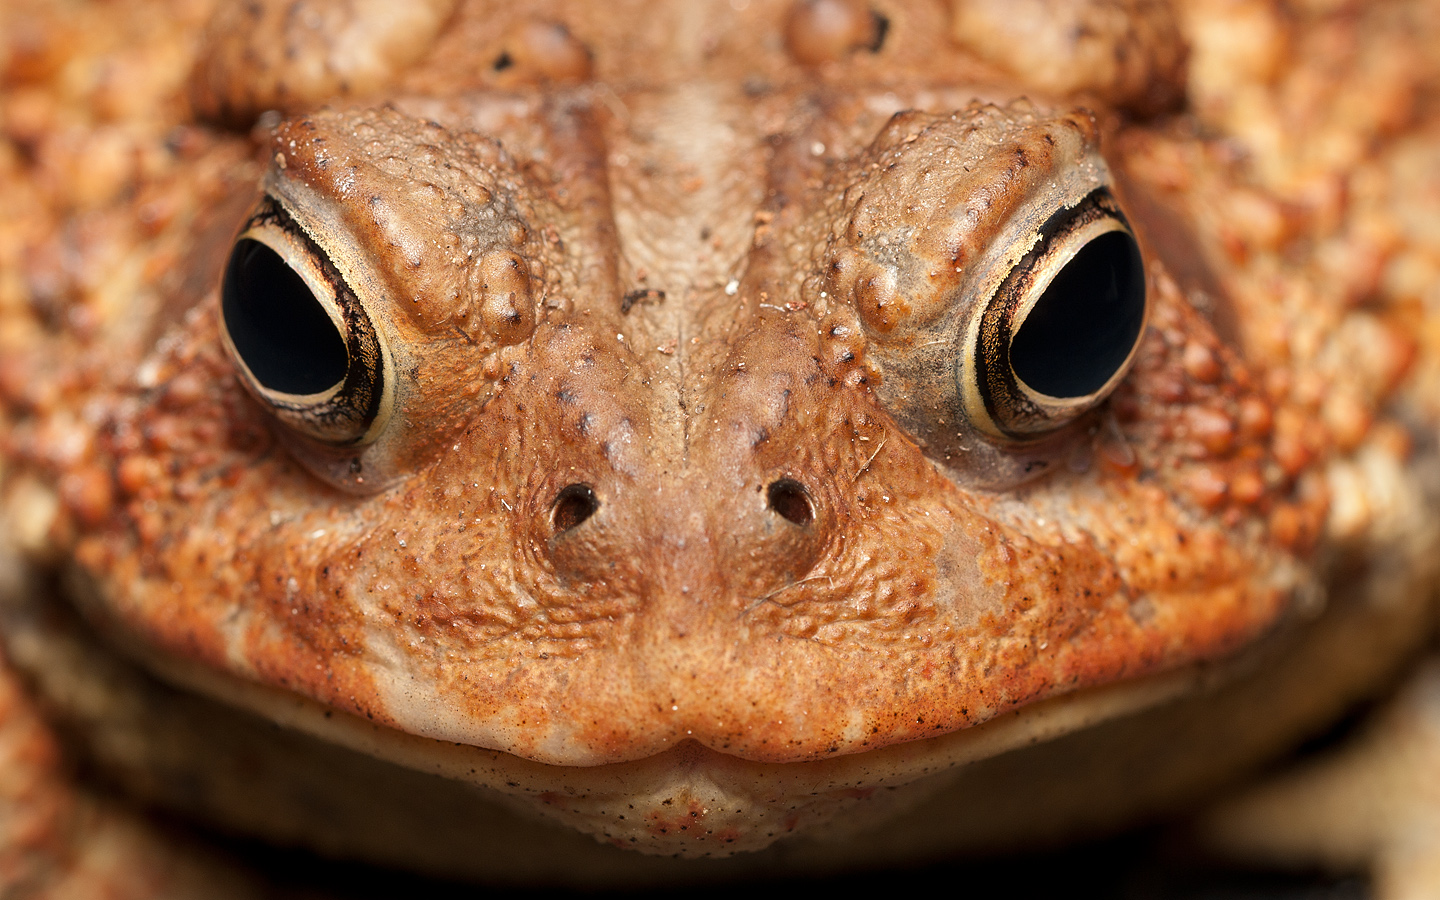 Smiling toad 6988 (V72)